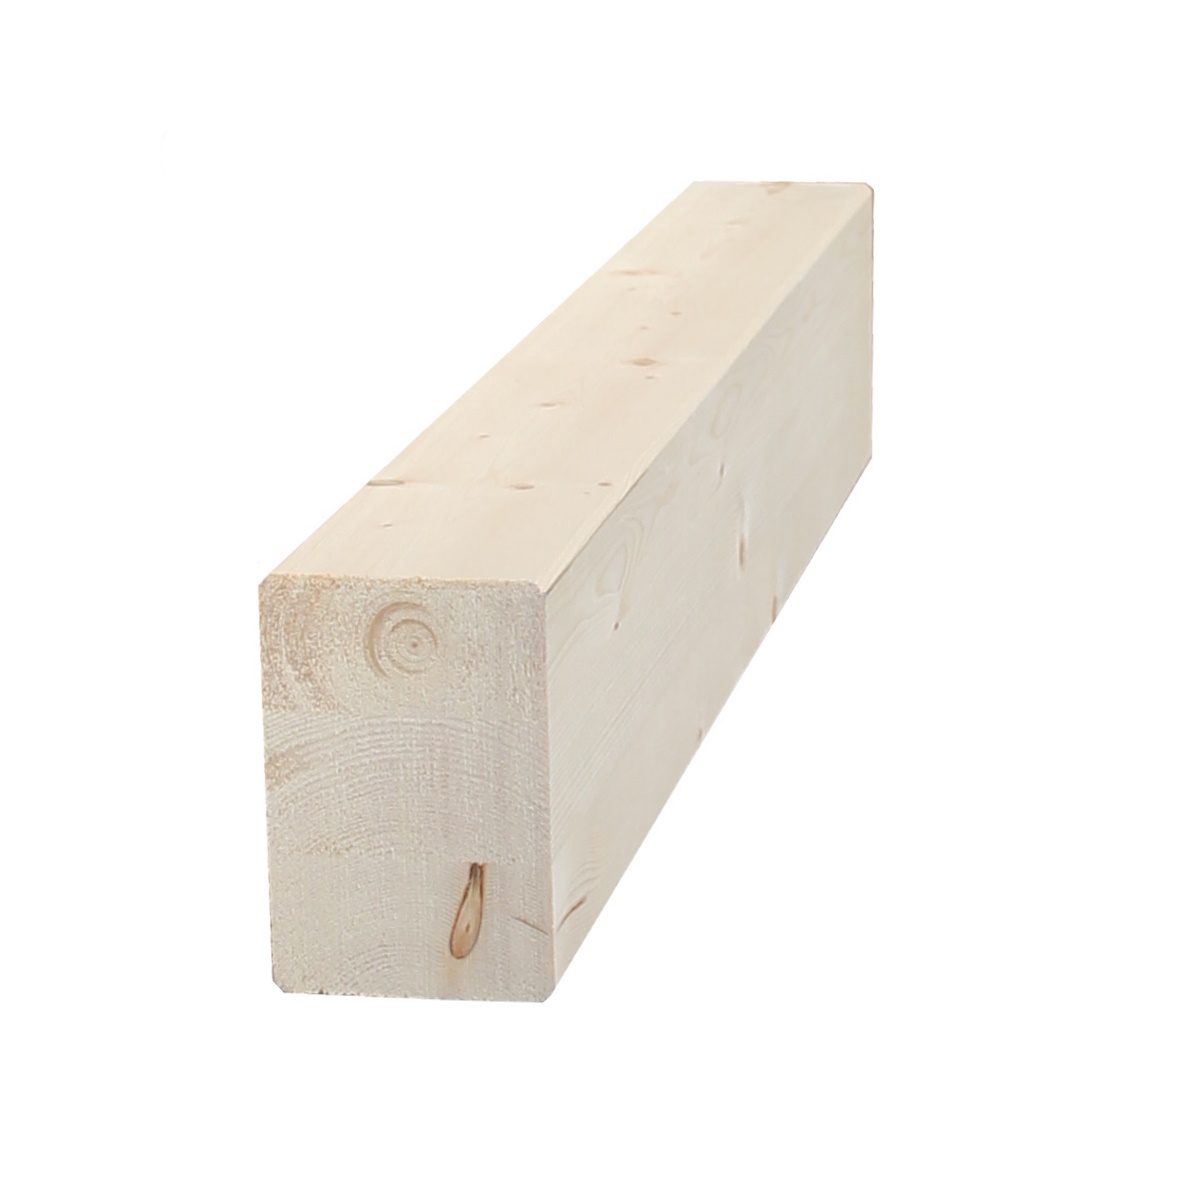 Il nuovo negozio online per legno su misura - Trave lamellare GL24 h di Abete piallata